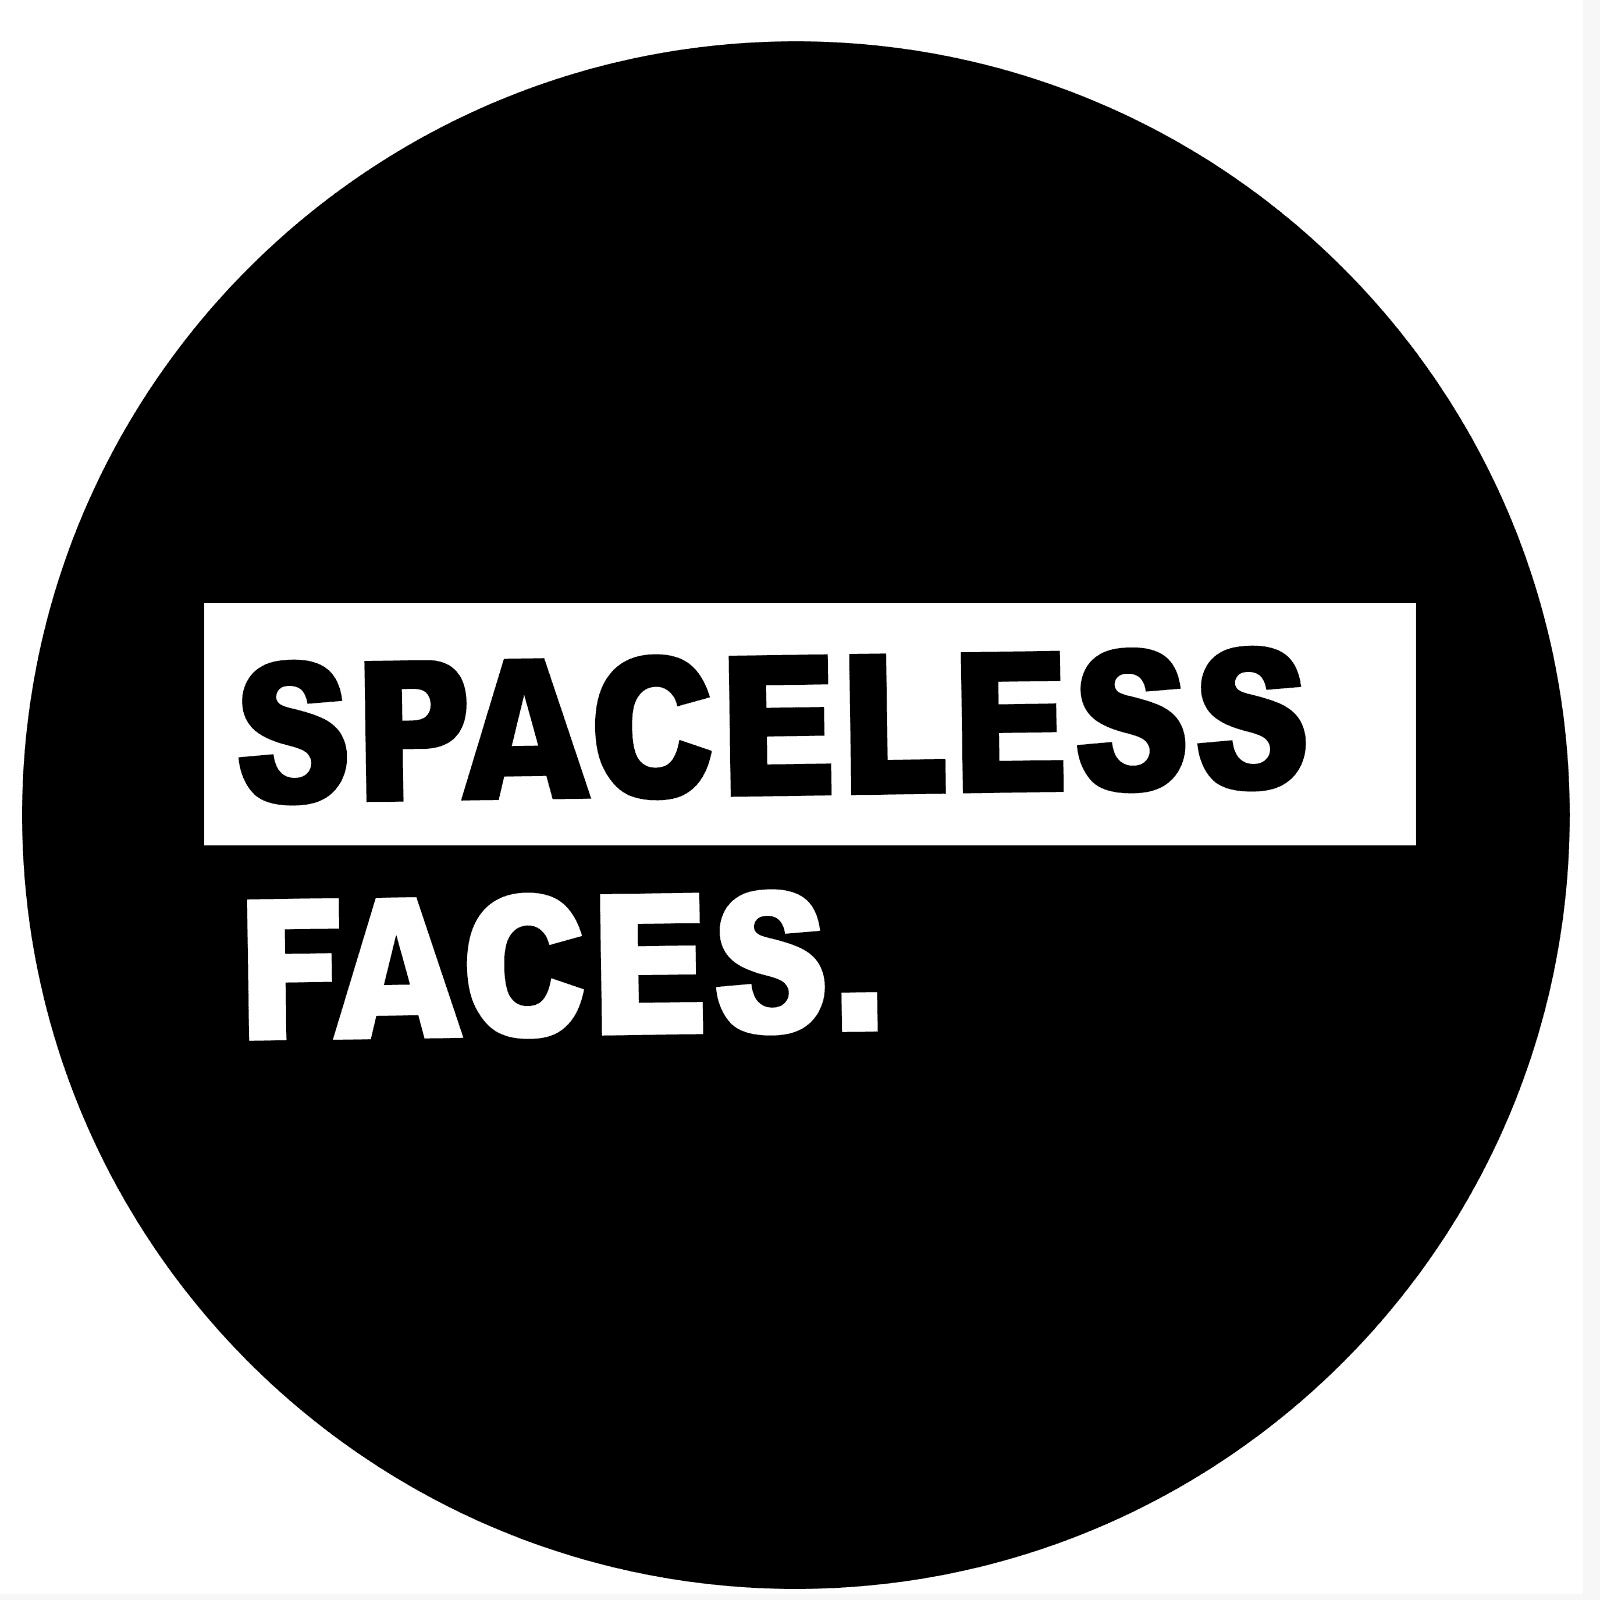 SpacelessFaces